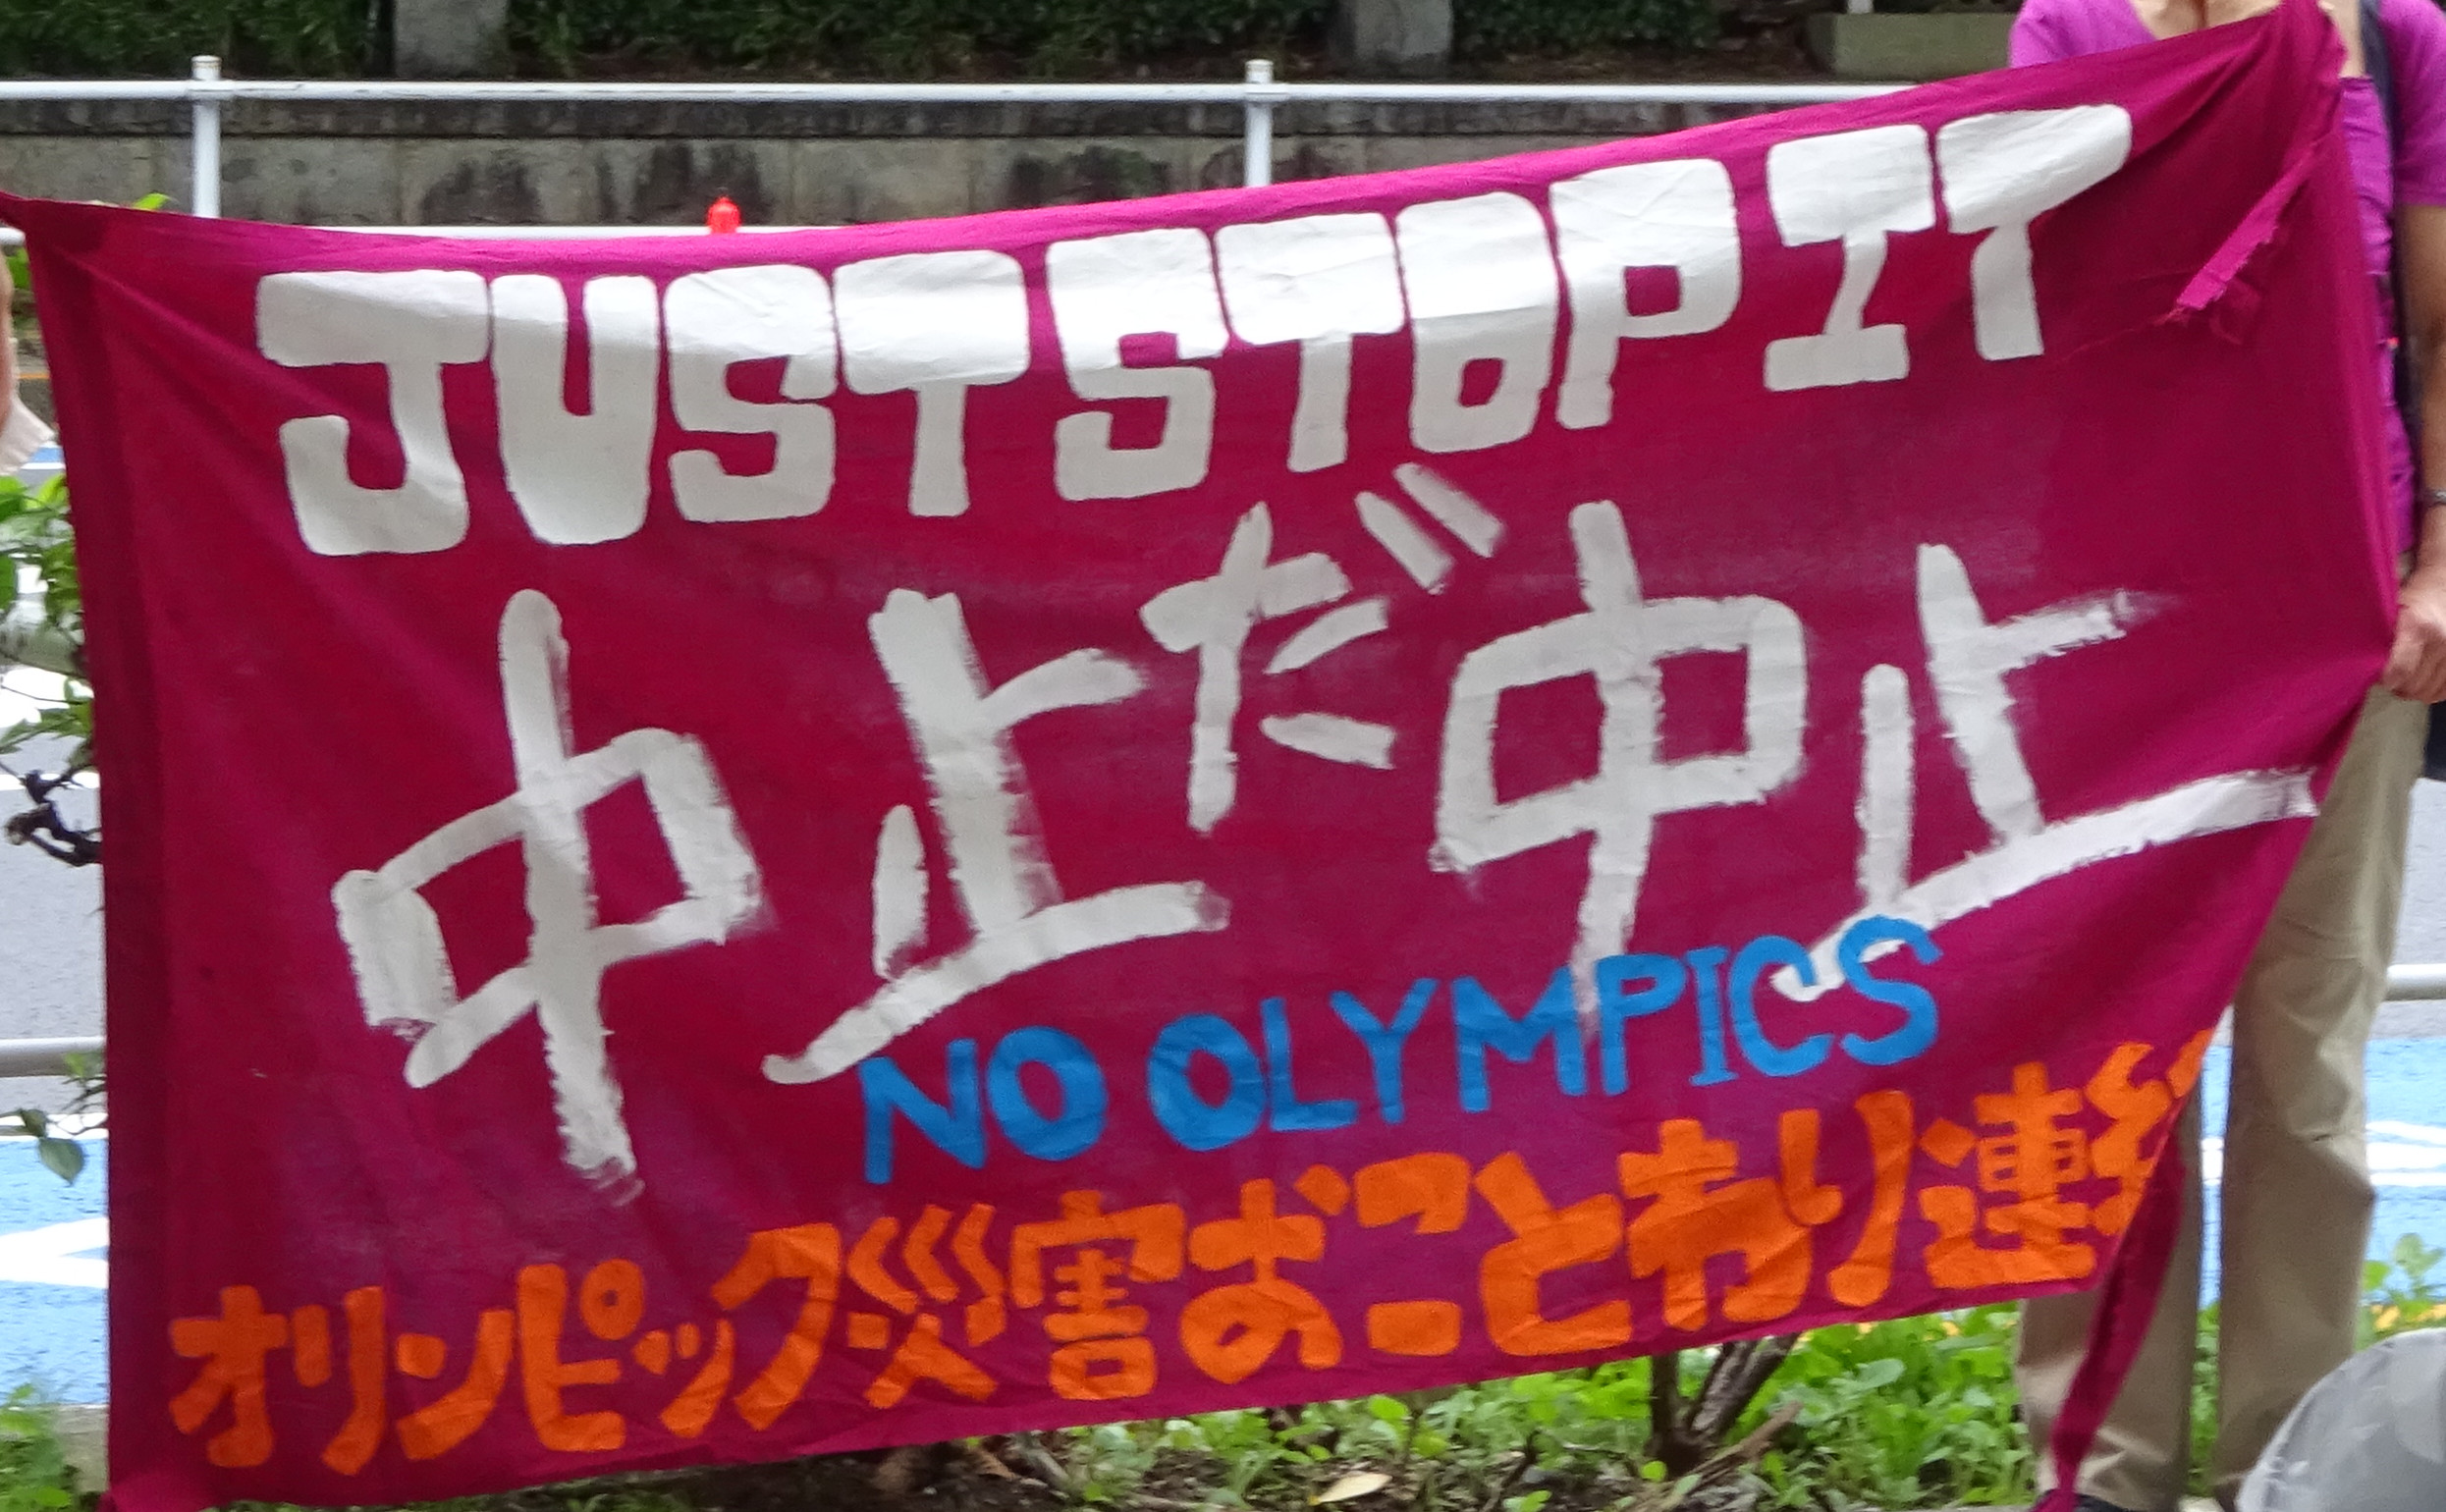 中止しろ 東京オリンピック